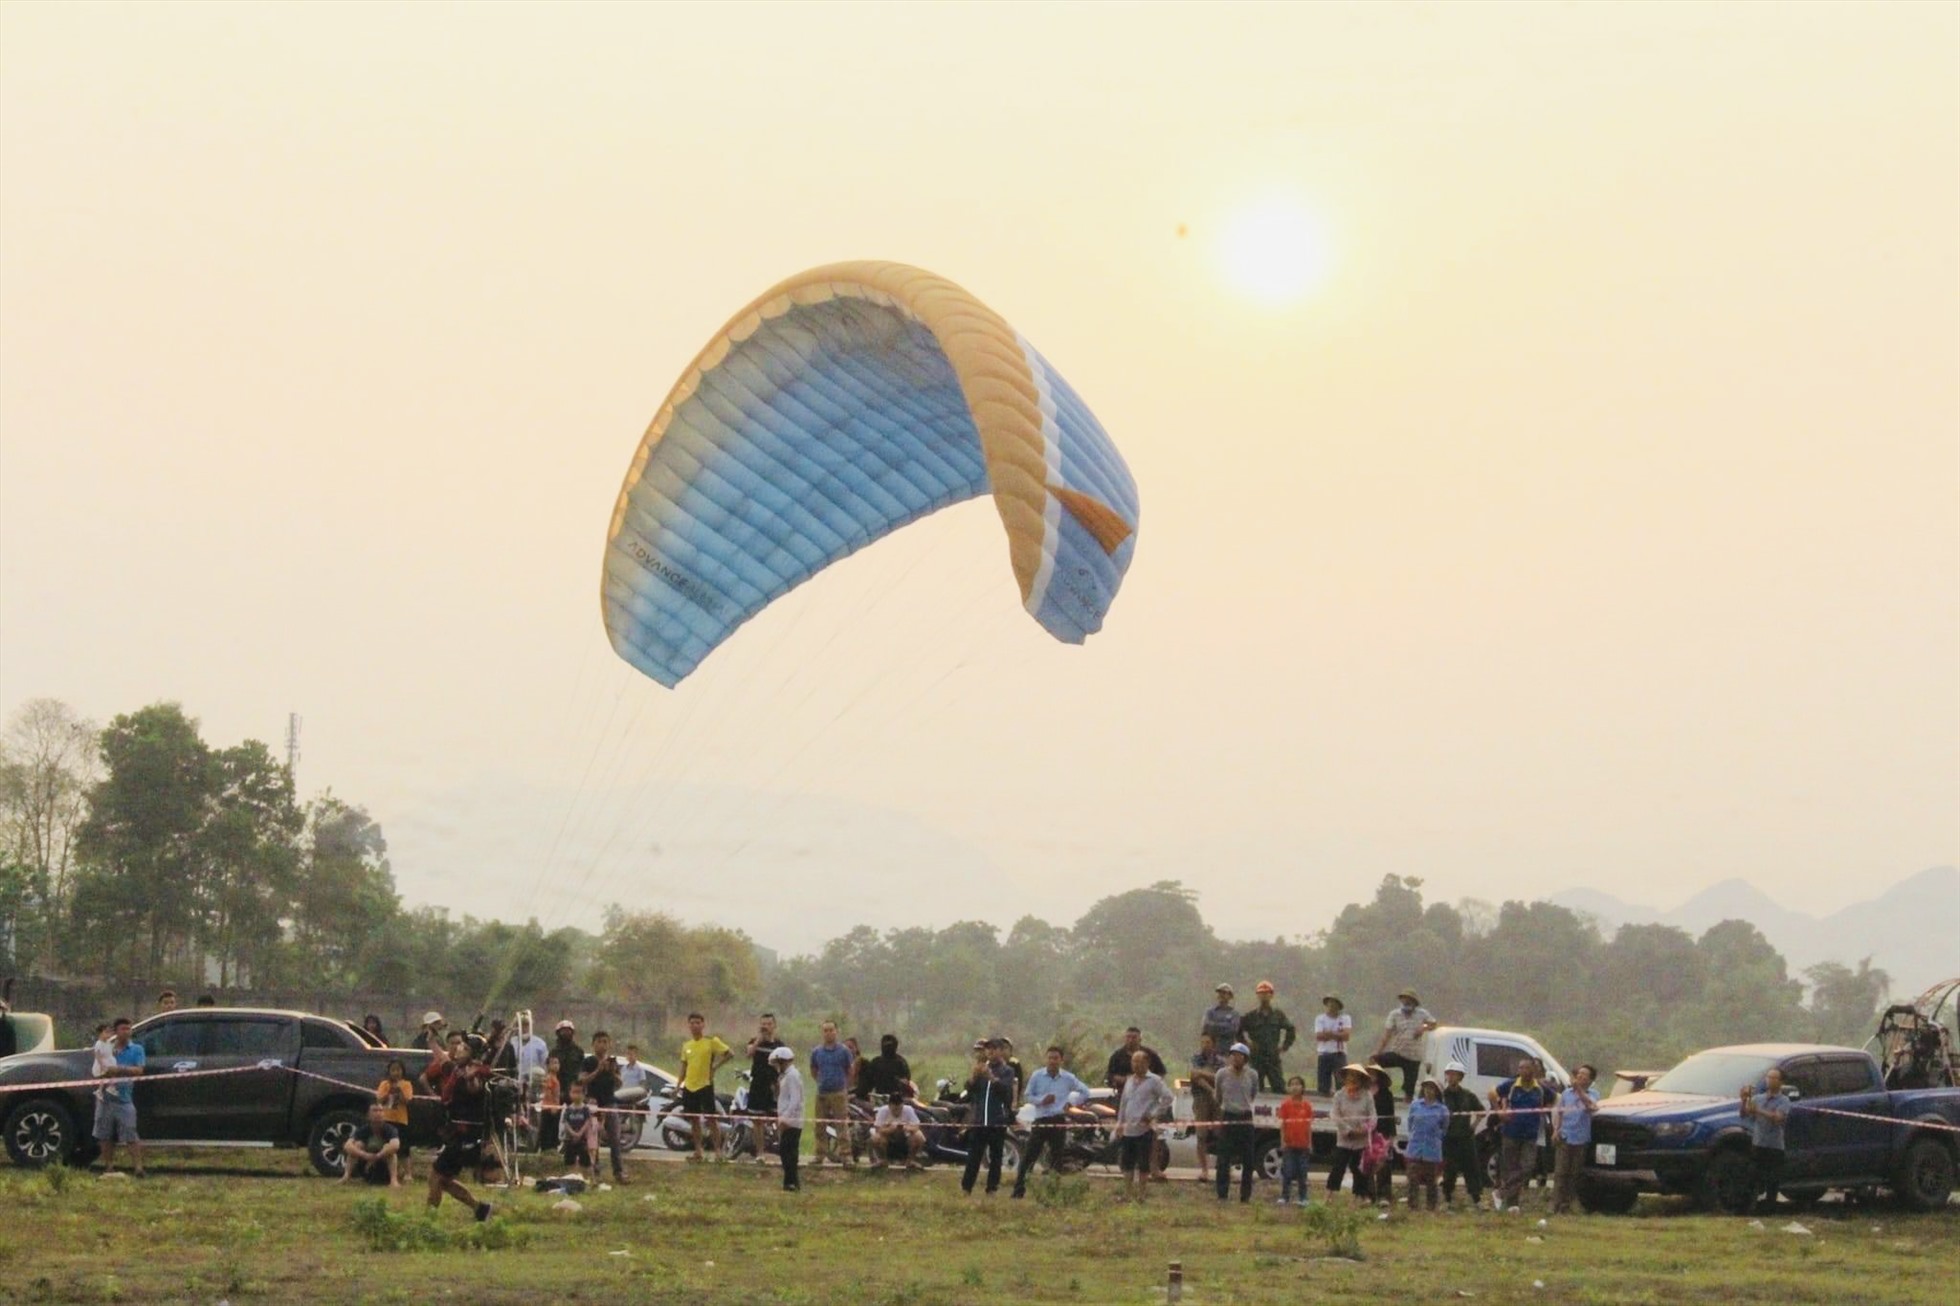 Chương trình đã có sự tham gia của khoảng 30 phi công paramotor từ mọi miền tổ quốc để biểu diễn trên bầu trời Quỳ Hợp. Ảnh: Quỳnh Trang